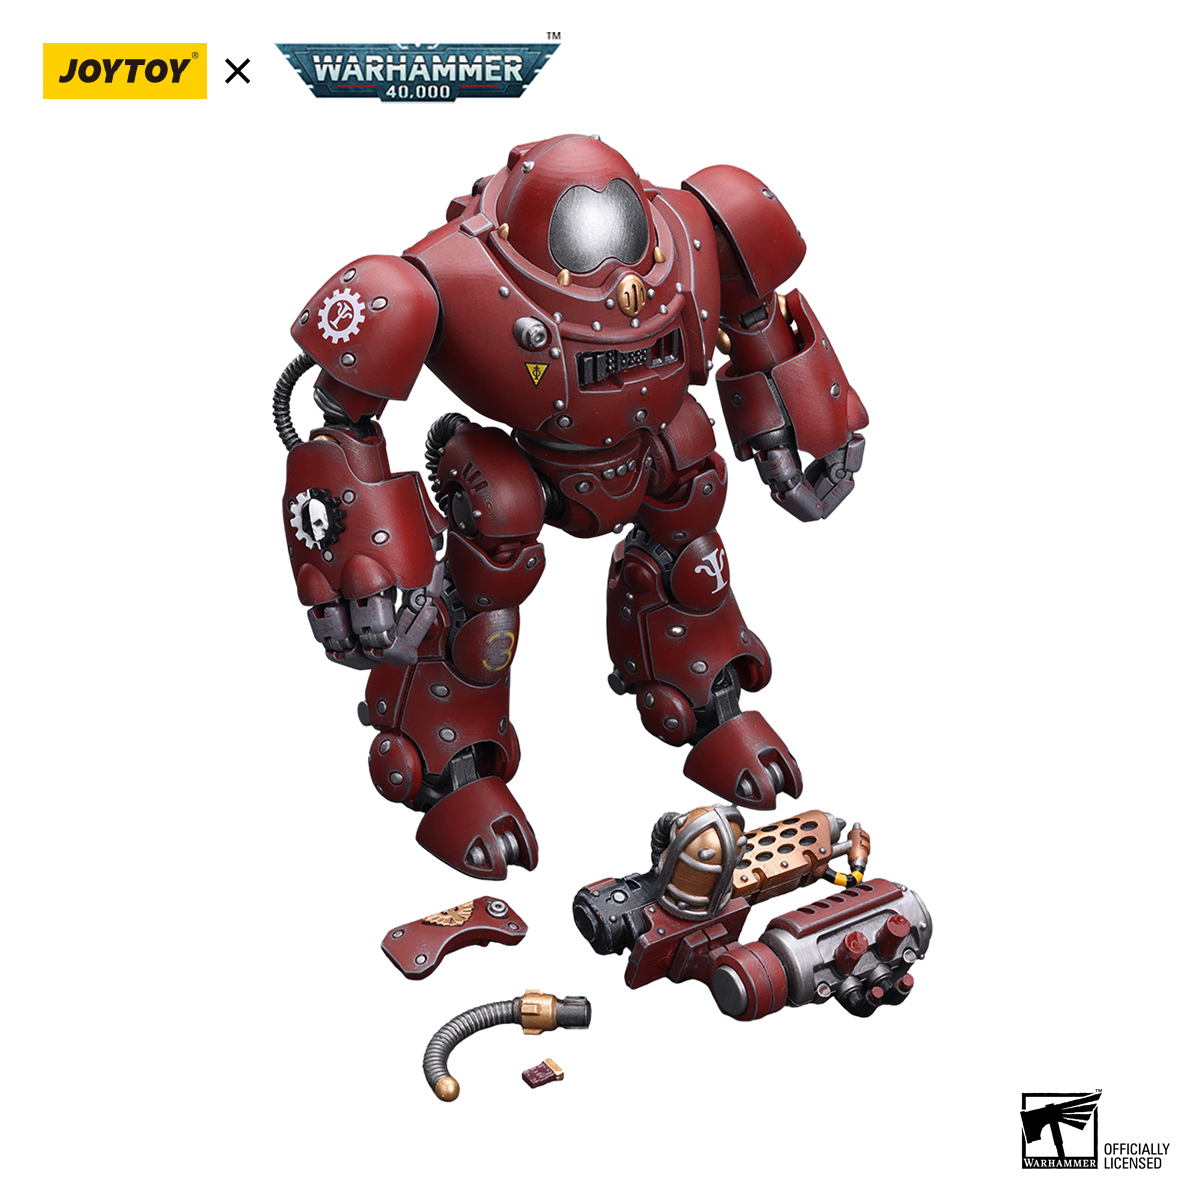 In stock] JOYTOY Warhammer 40K Adeptus Mechanicus Kastelan Robot